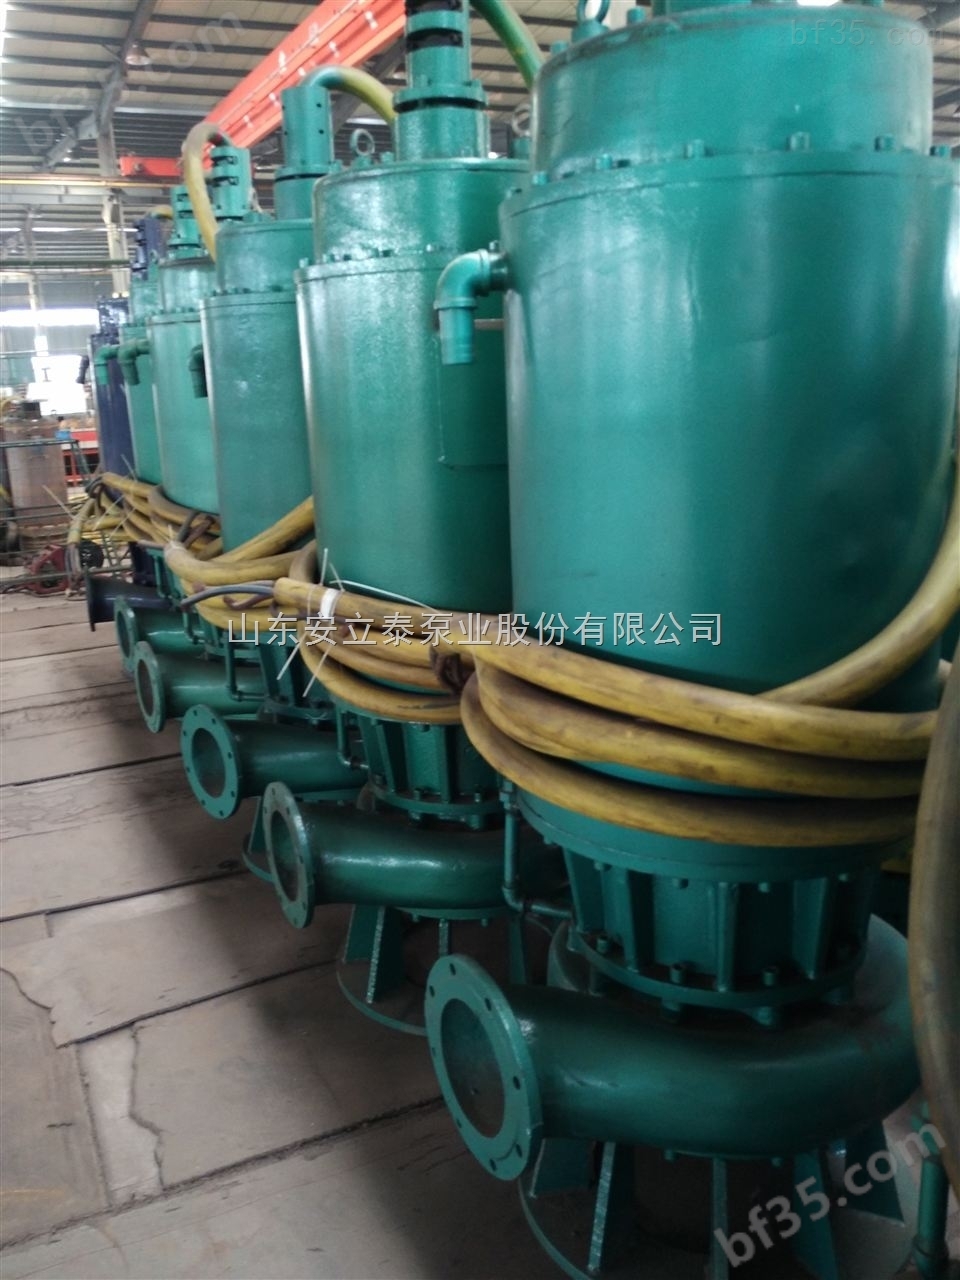 防爆潜水泵污水泵专业生产制造实力派厂家